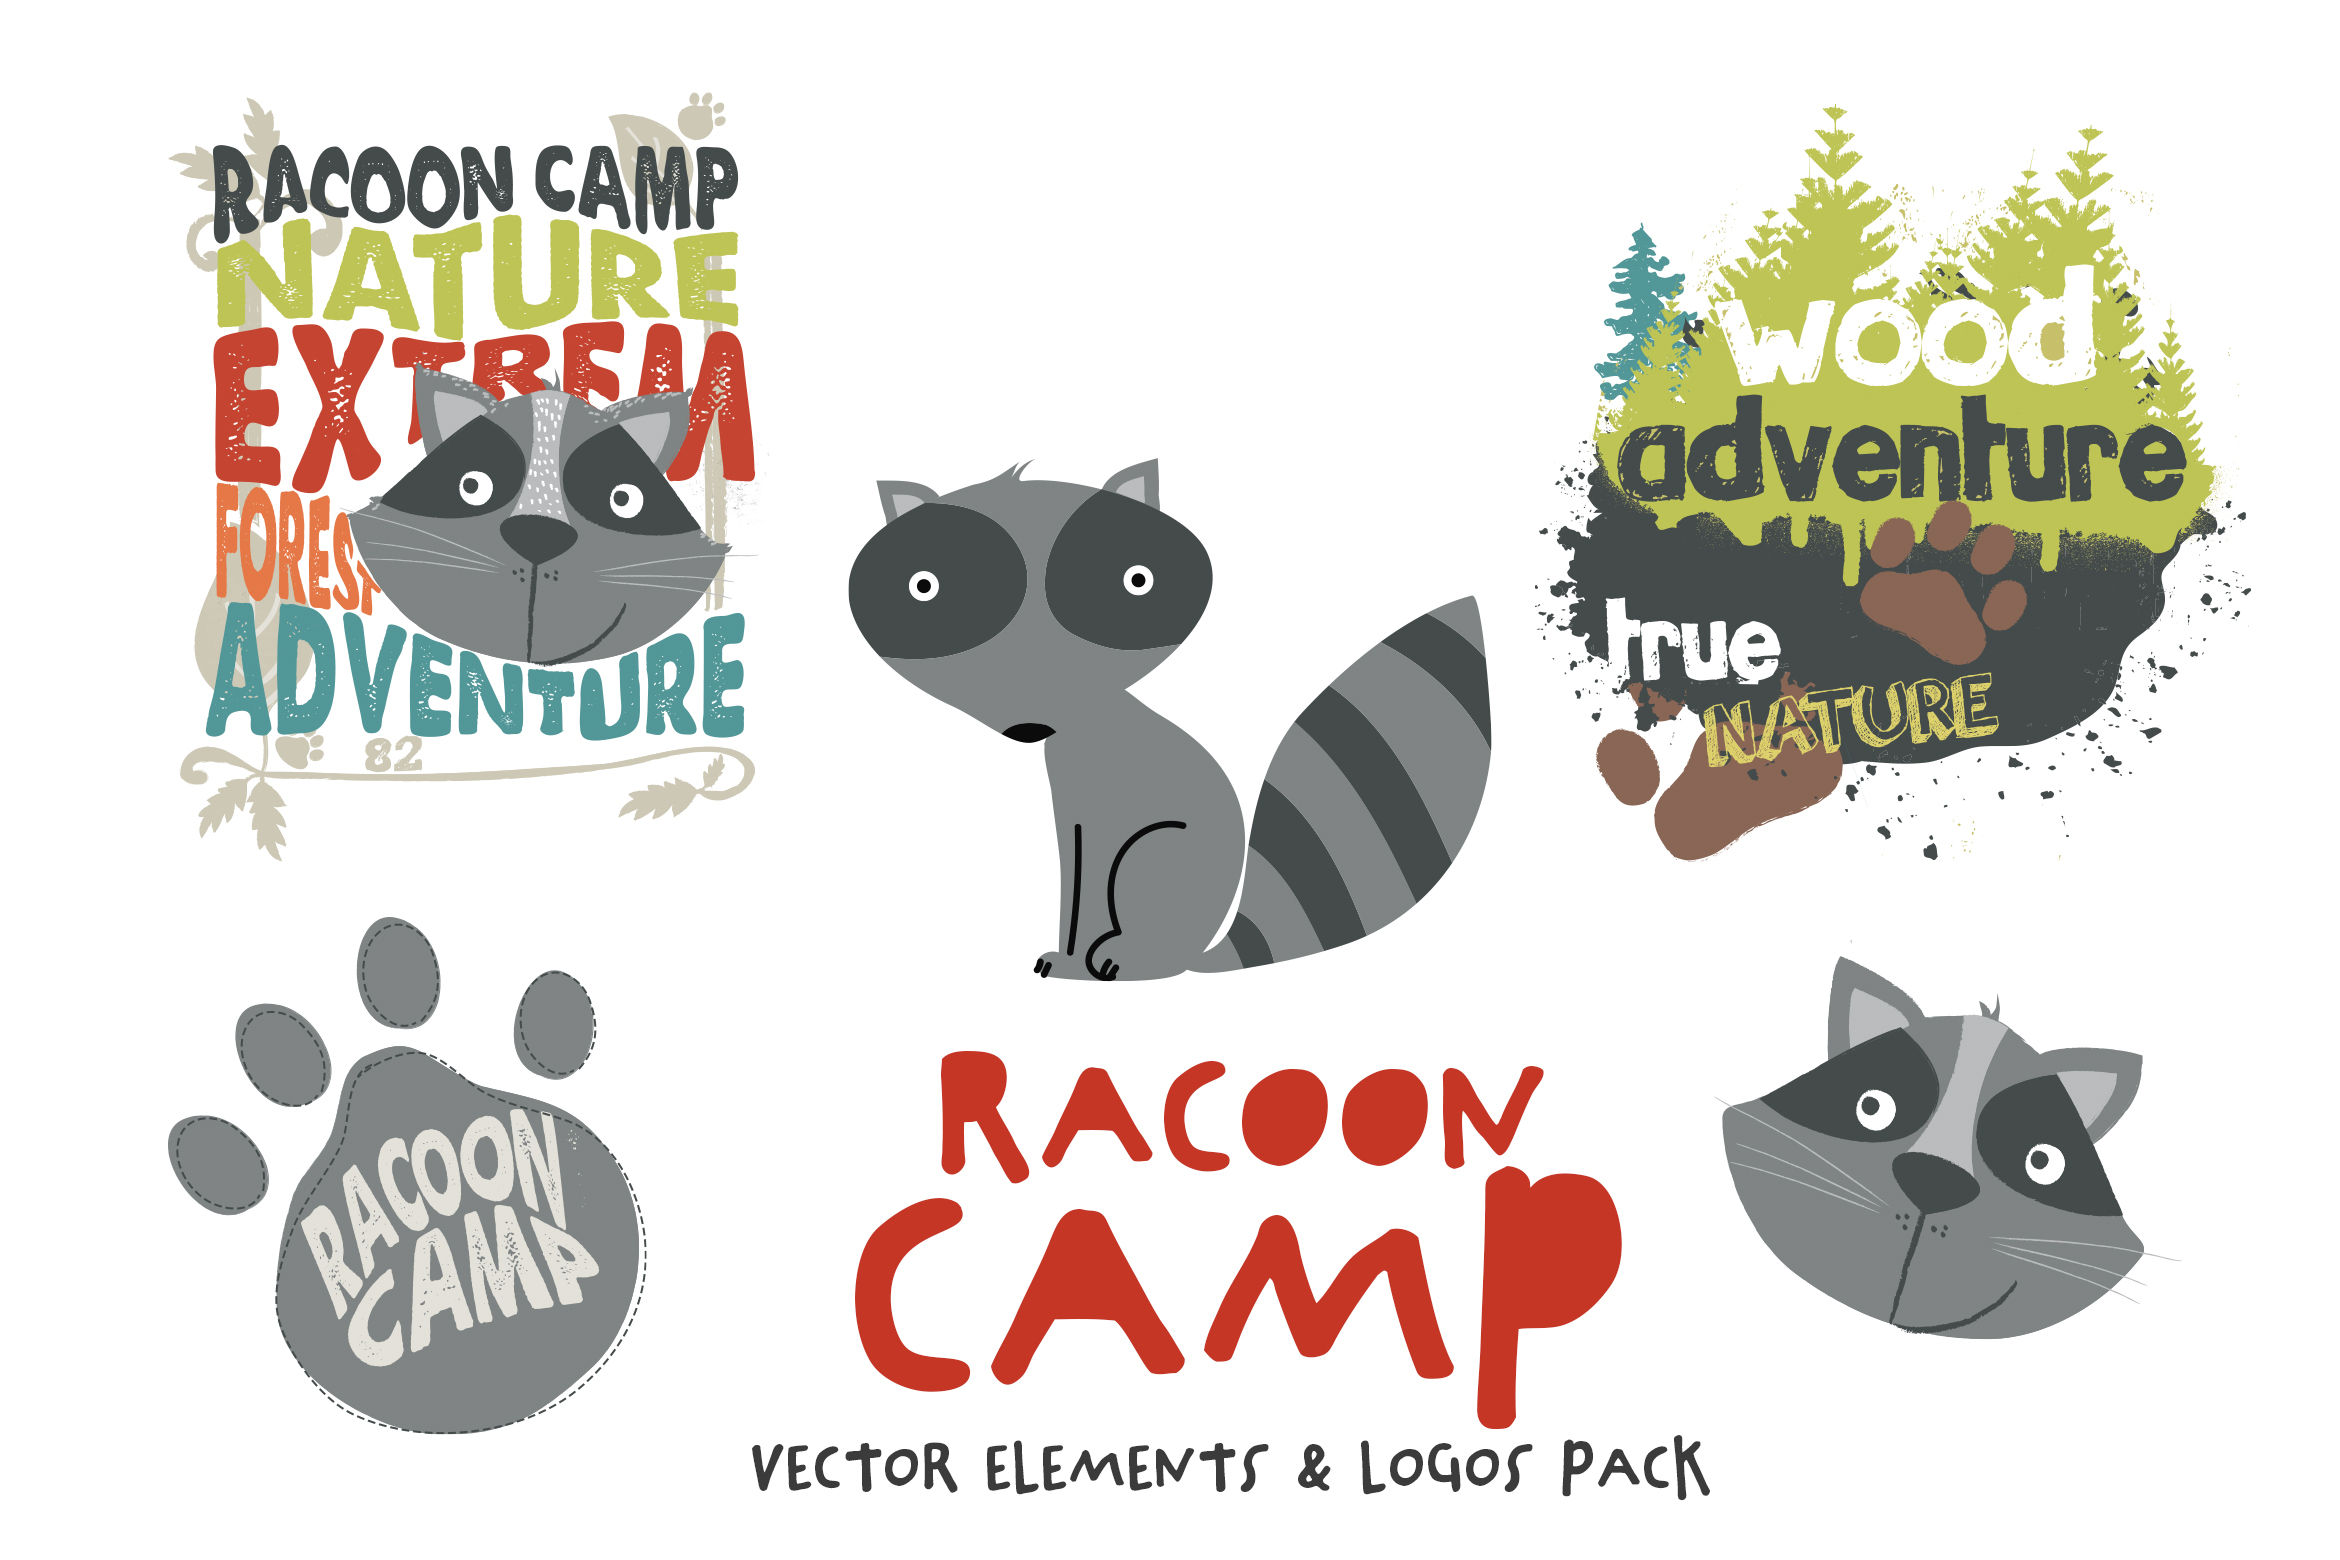 Racoon_Camp_Vectors_Pack_1_2340.jpg